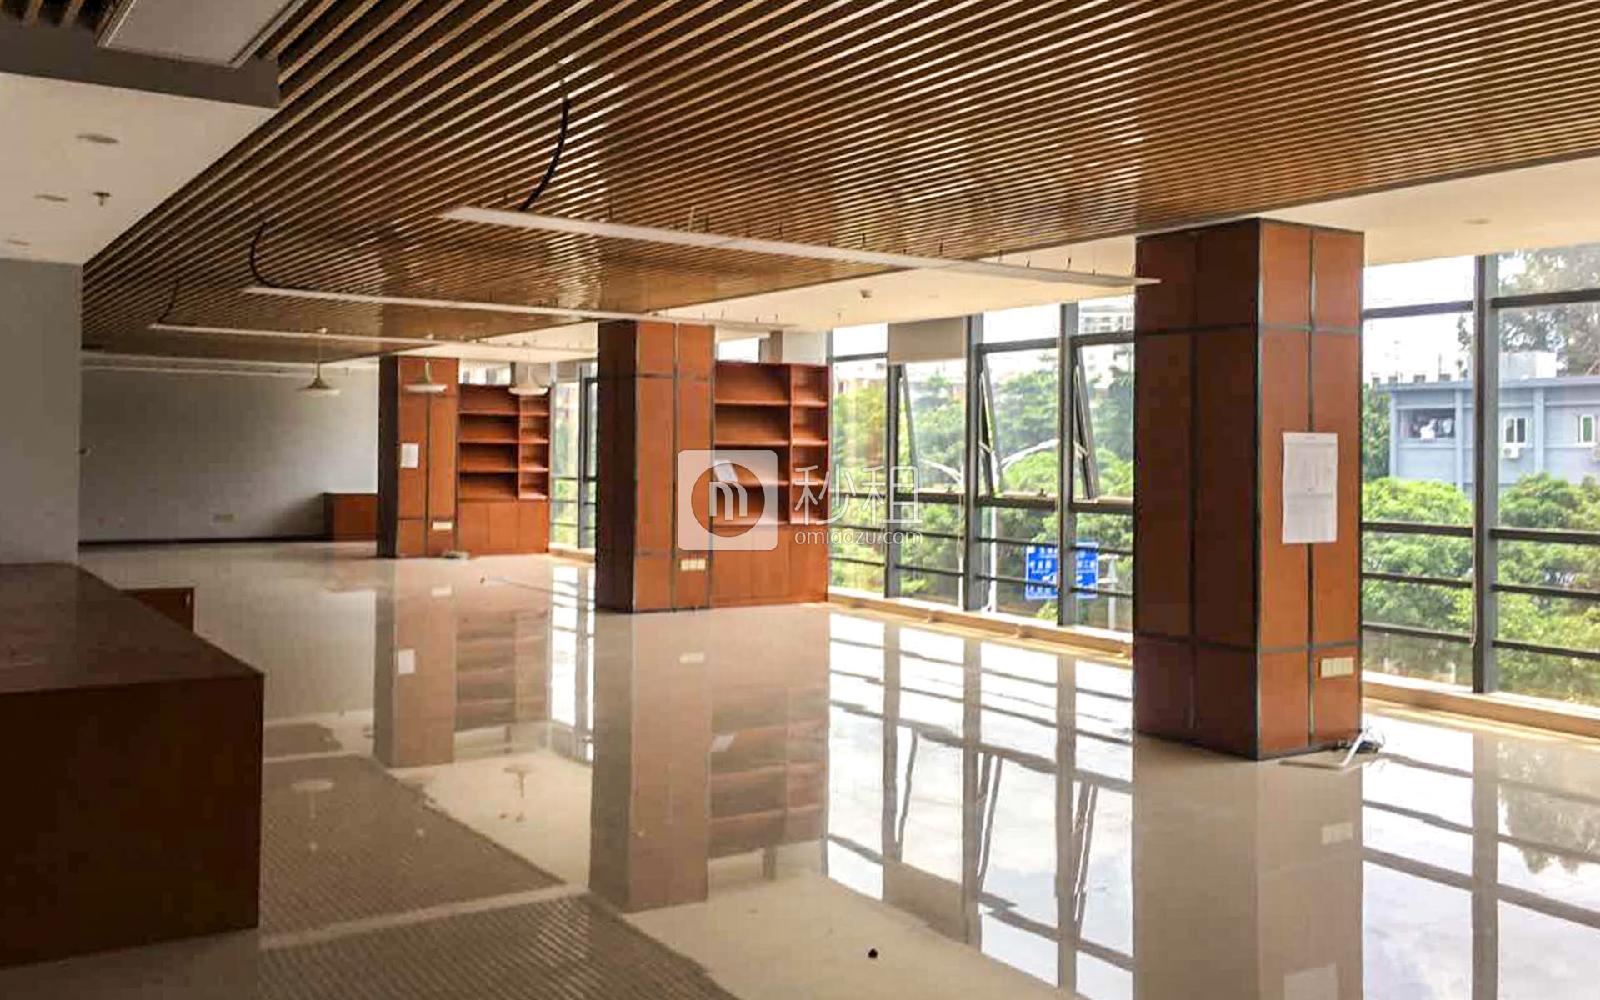 上塘商业大厦写字楼出租748平米豪装办公室65元/m².月